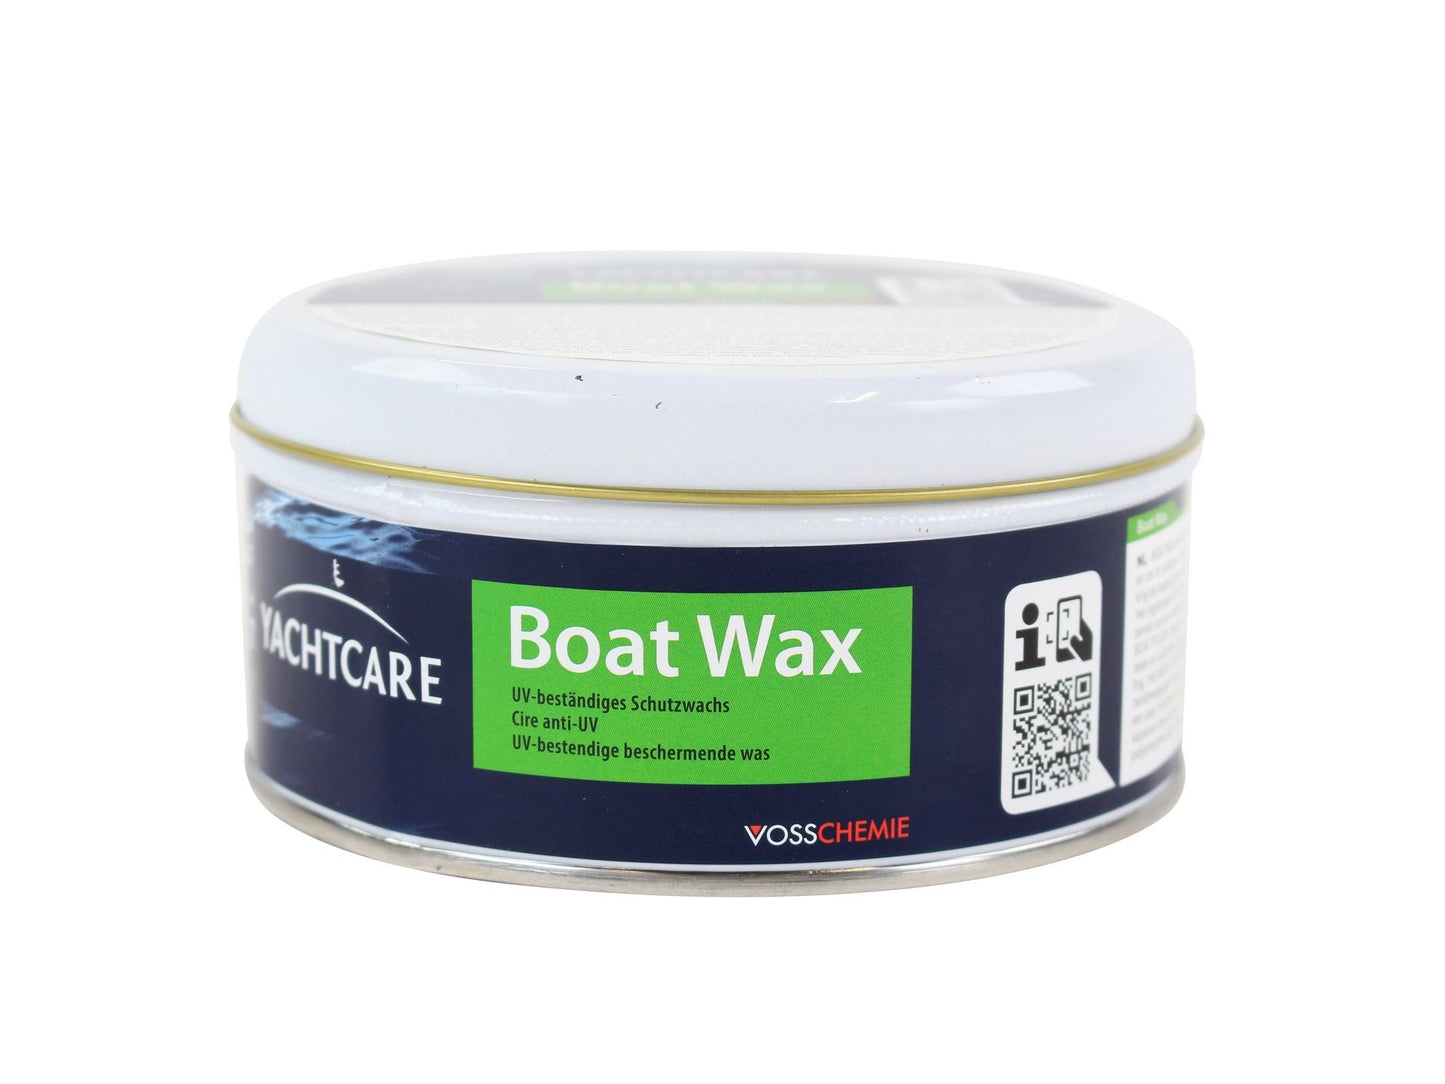 YachtCare Boat Wax 300gr.